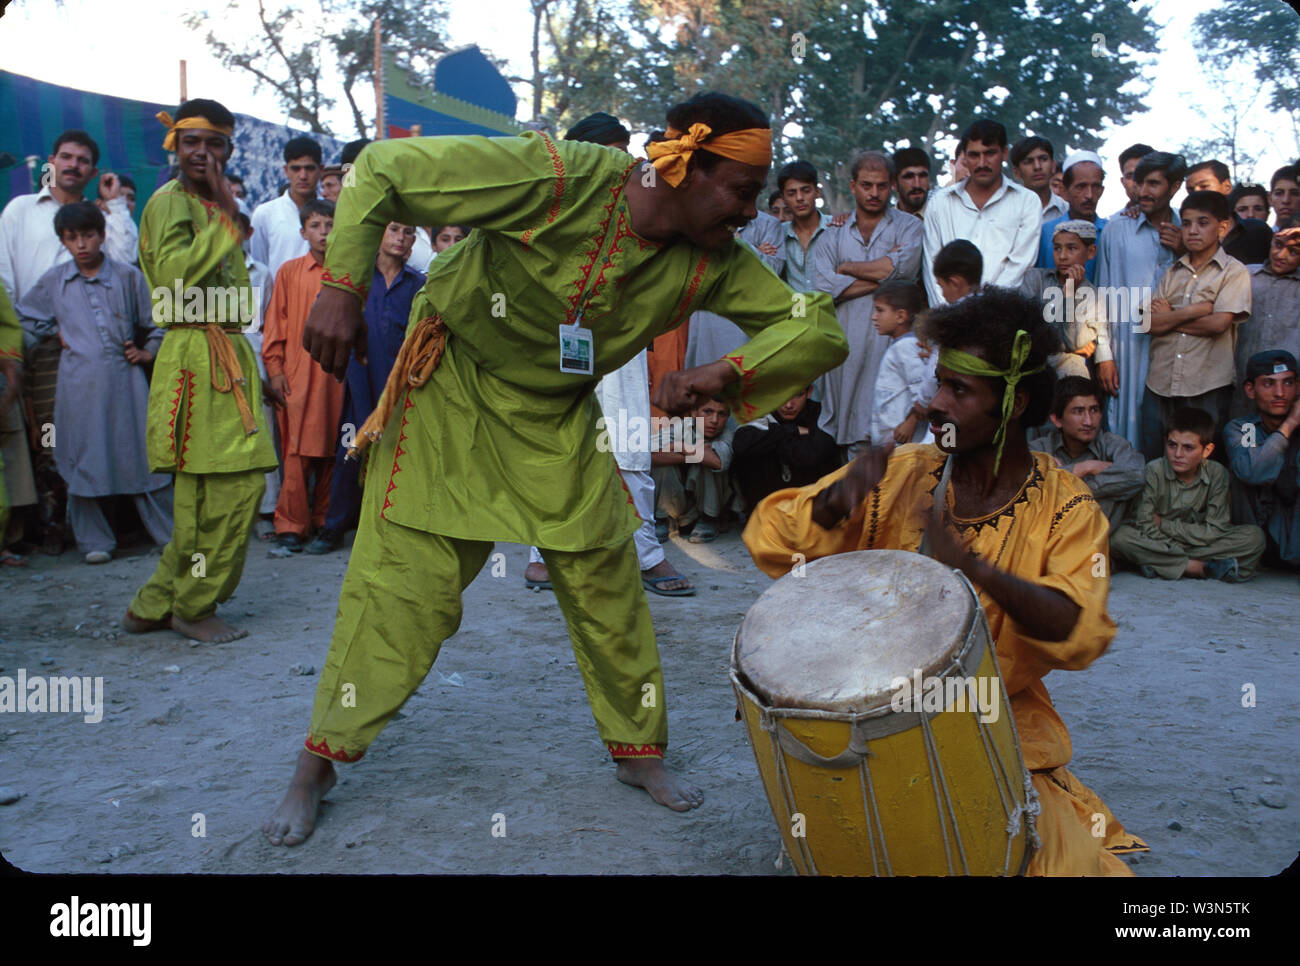 Gli uomini di eseguire la tradizionale danza Makrani, durante un featival culturale, nella città di Gilgit nella regione nord del Pakistan. Aprile 20, 2005. Foto Stock